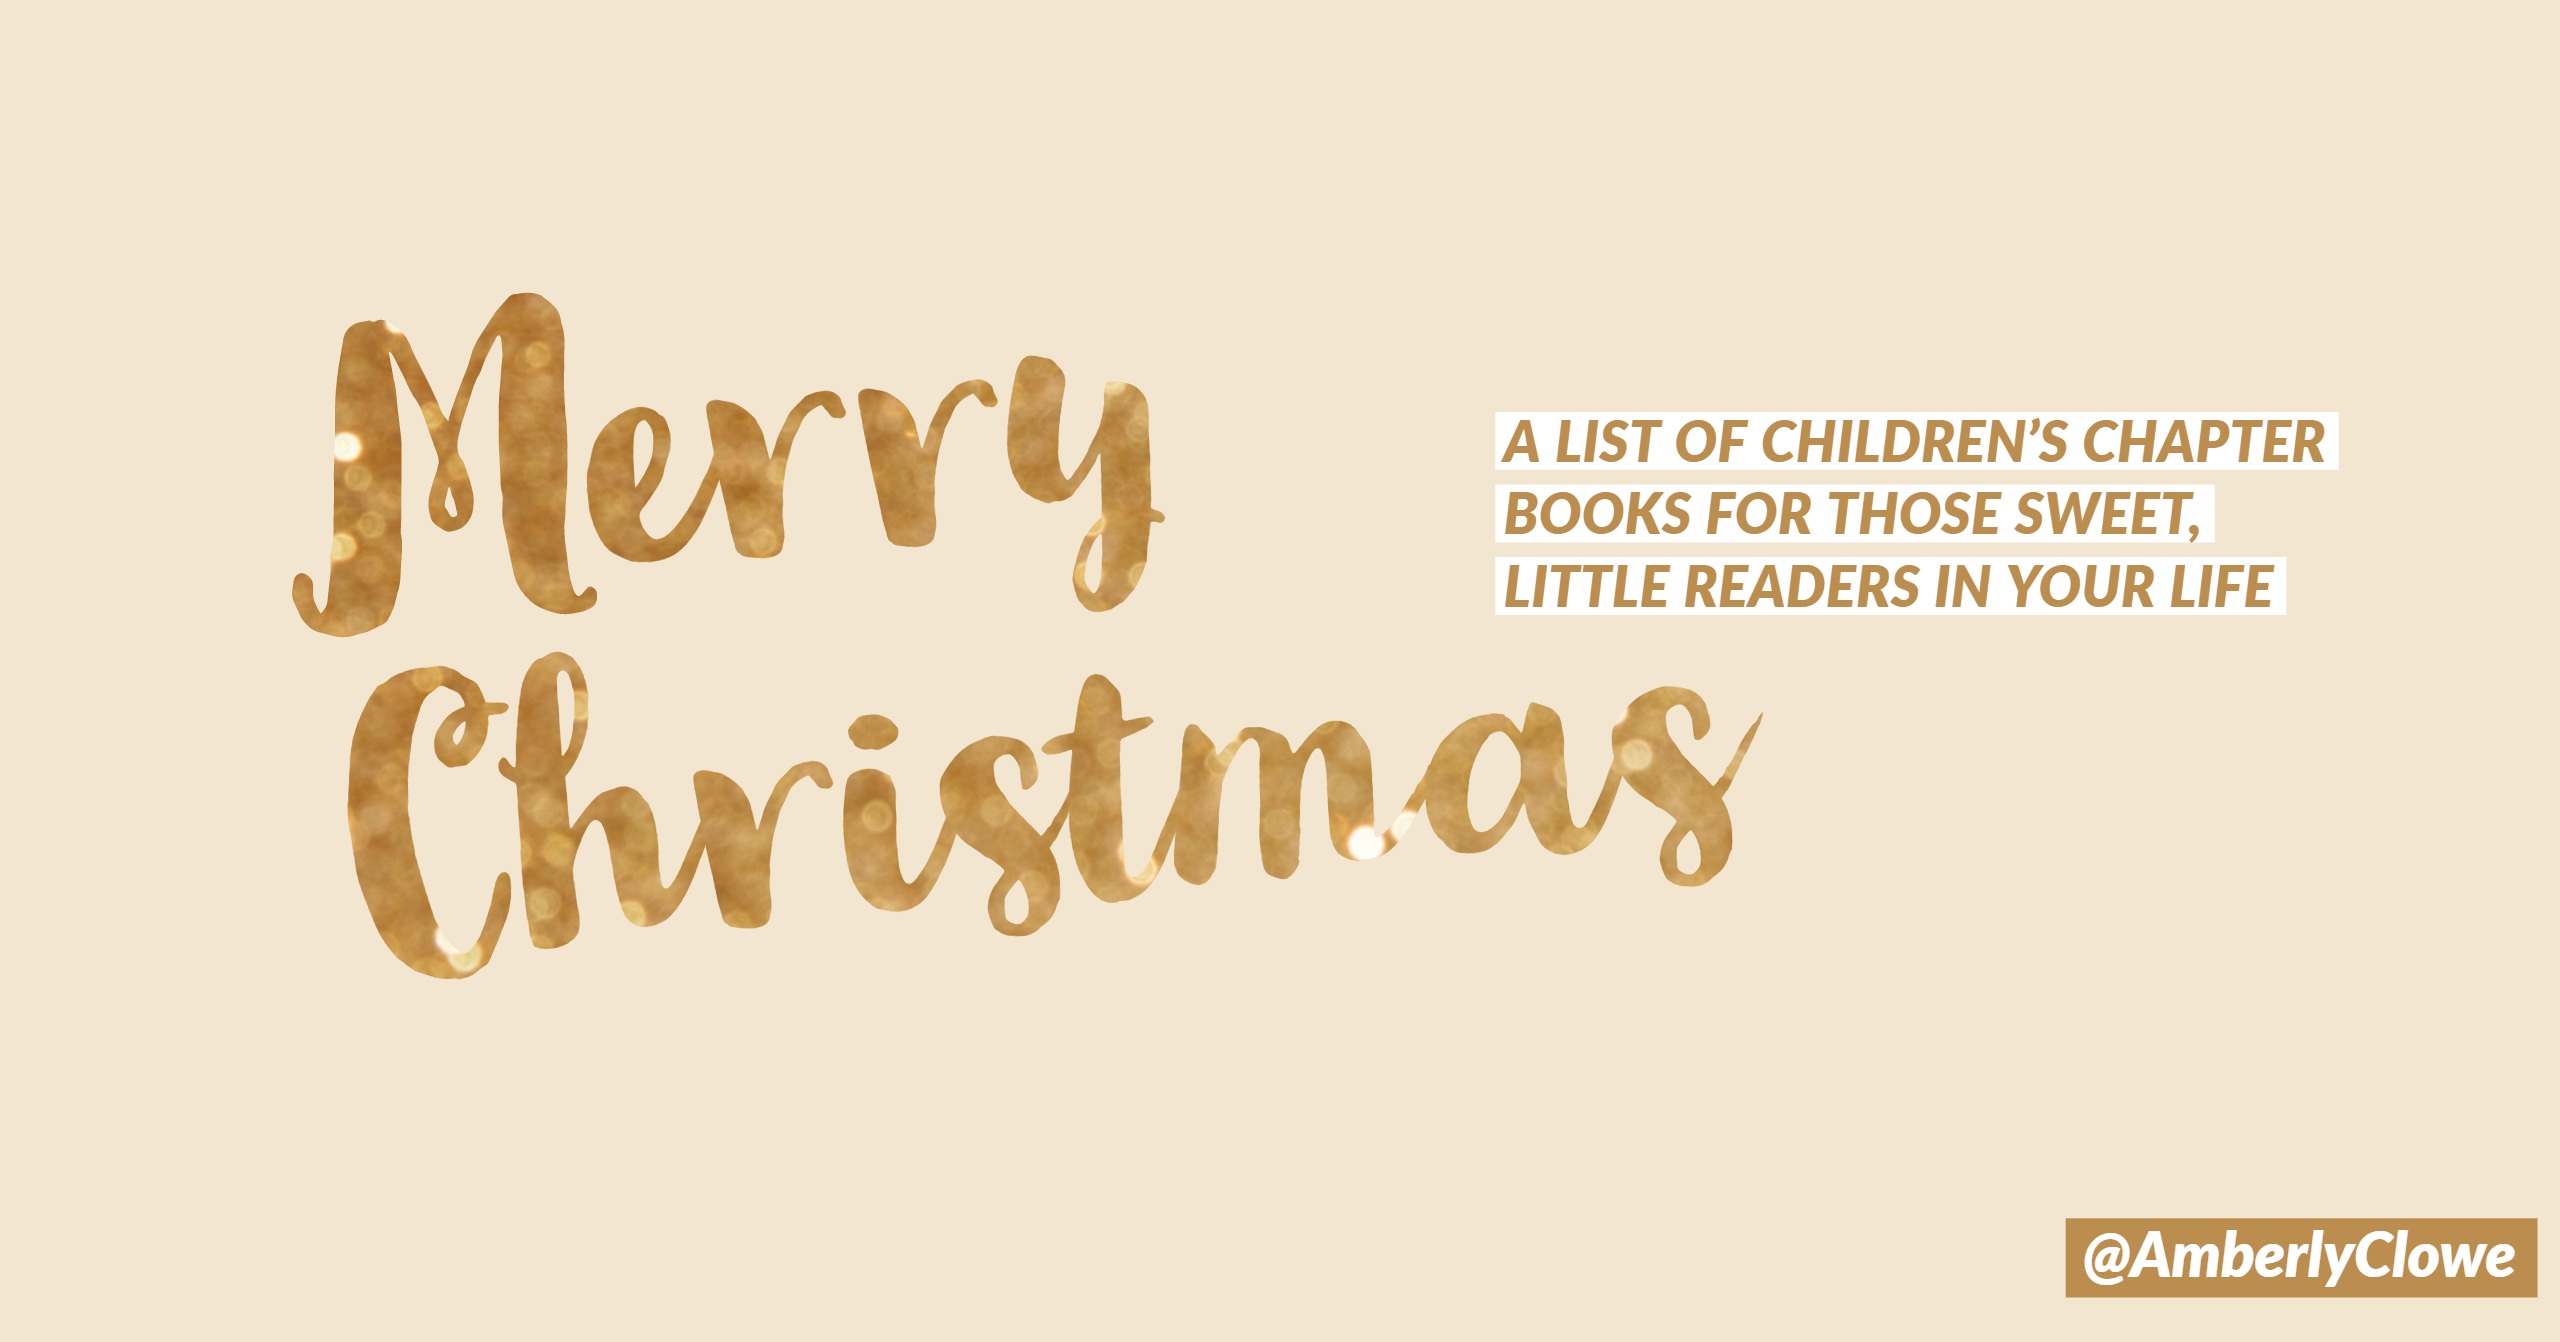 Children’s Chapter Books for Christmas Break